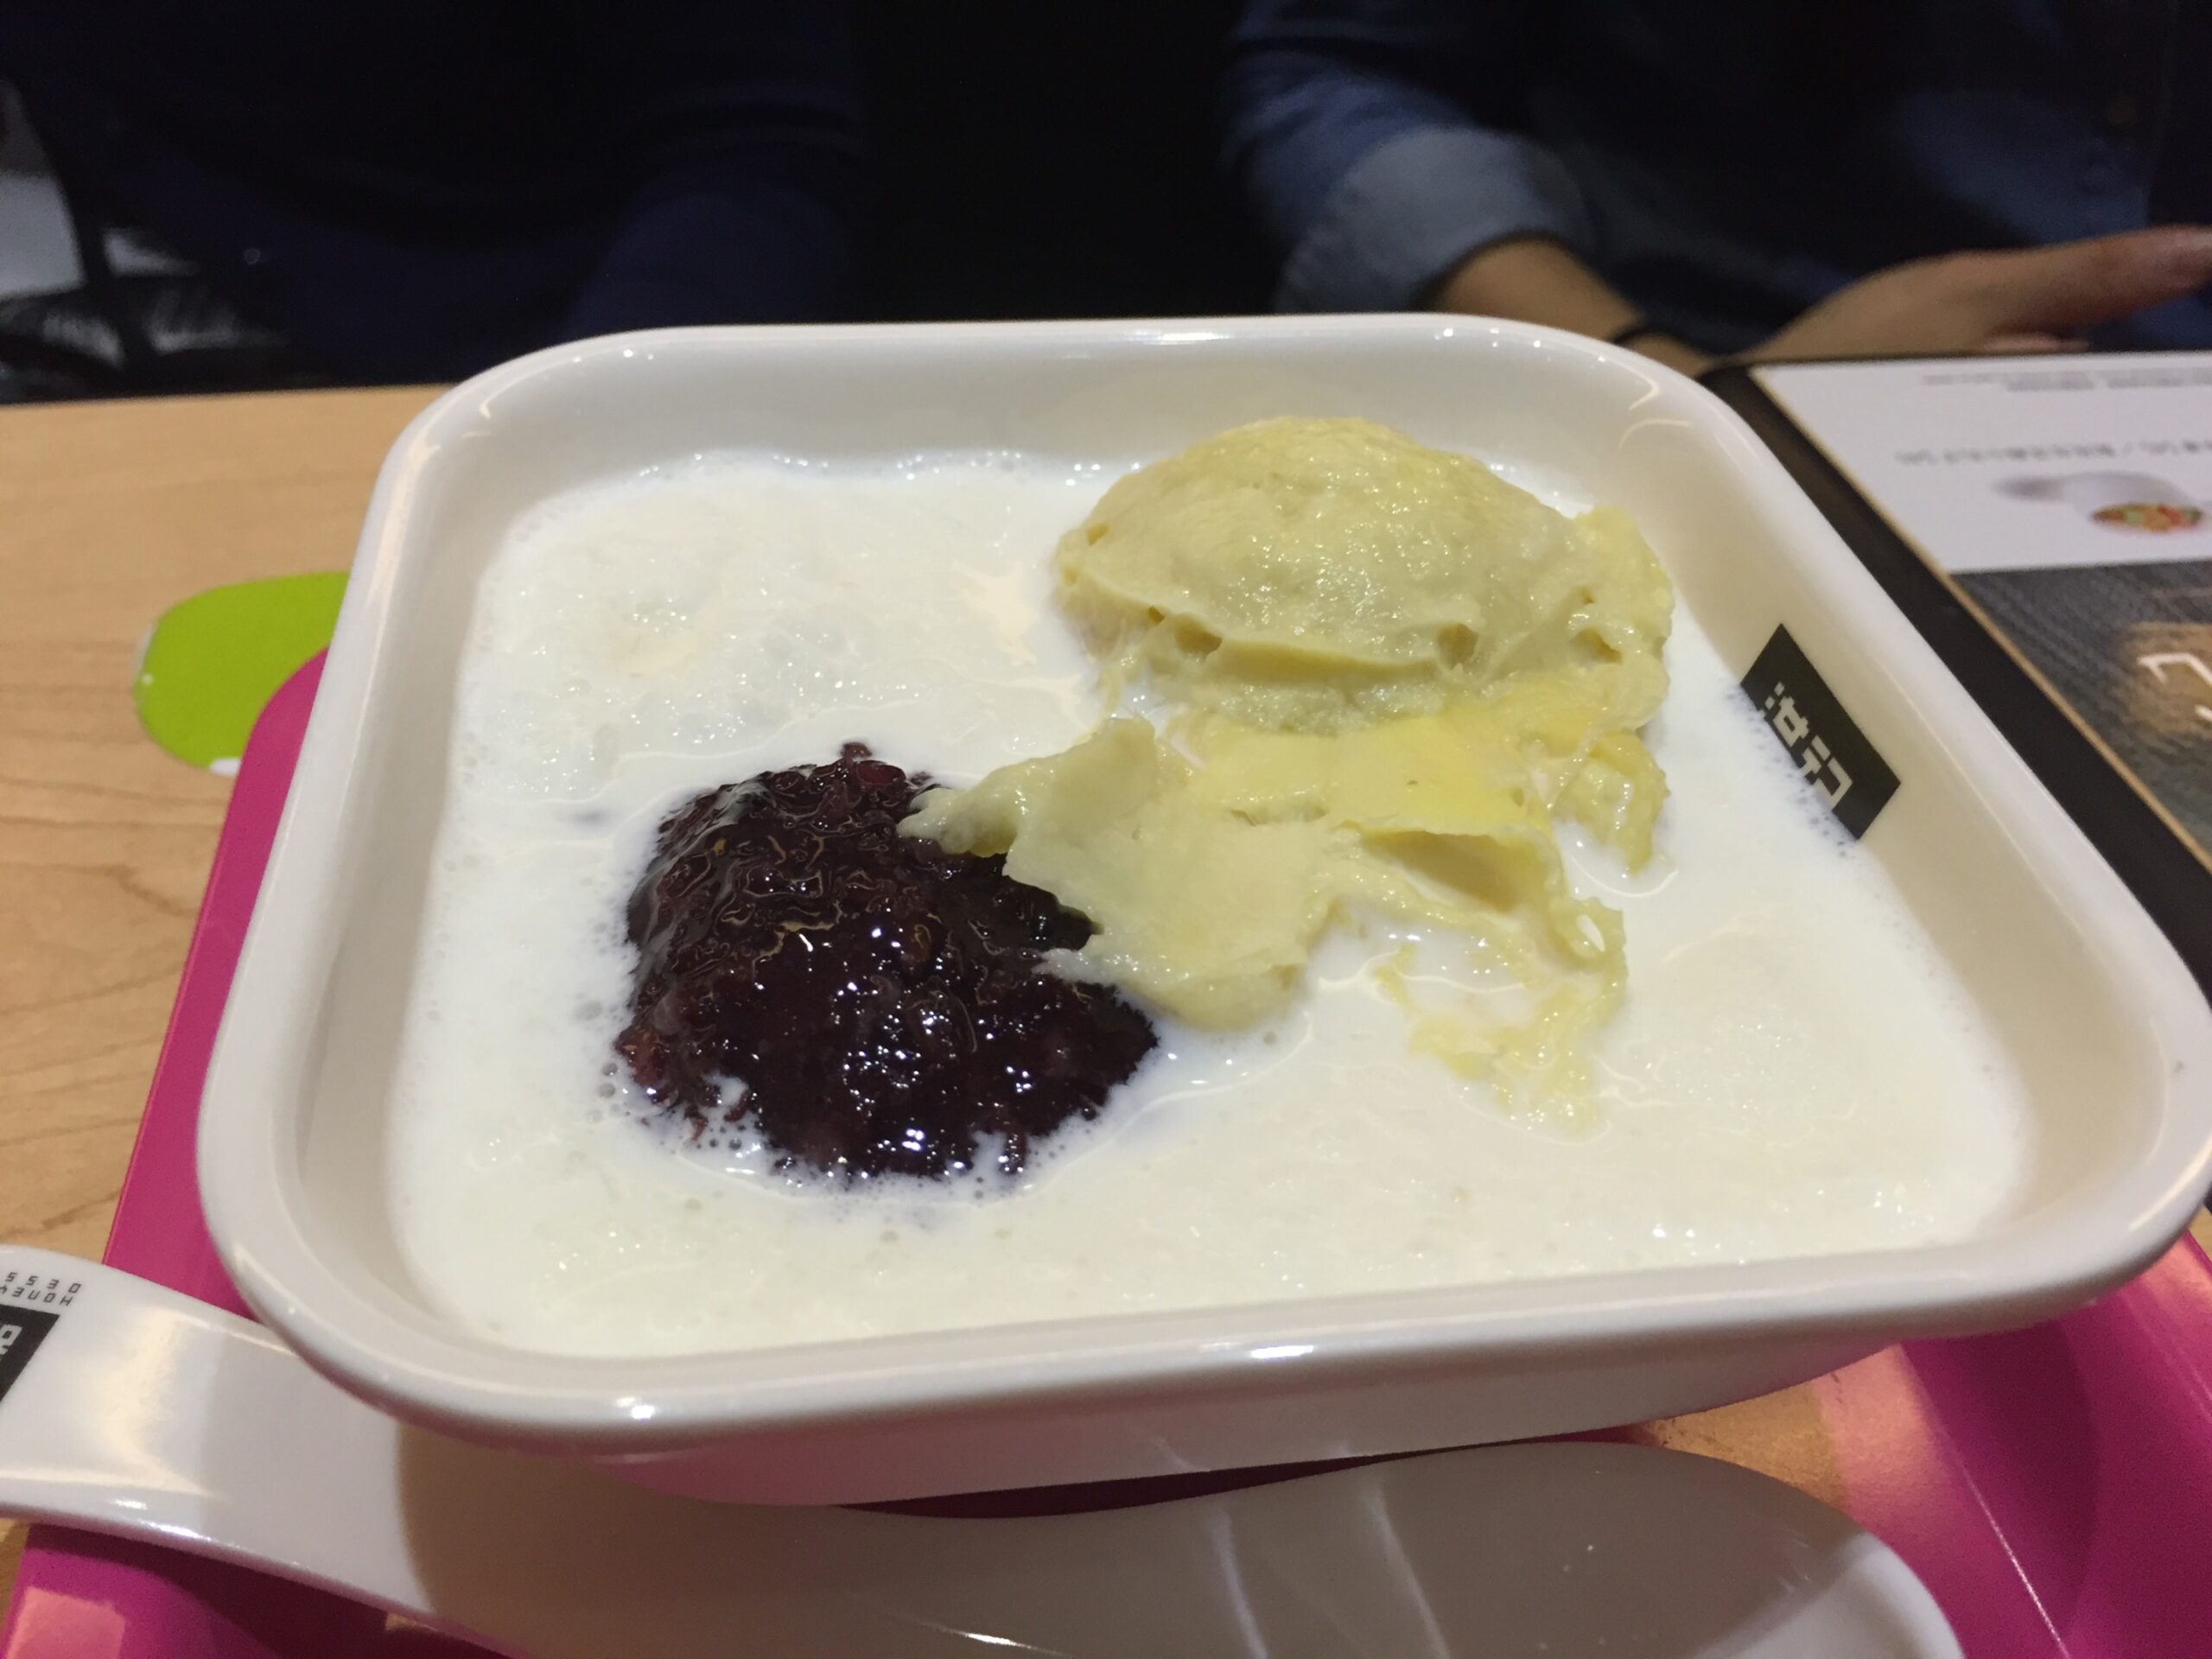 Honeymoon Dessert serves durian with black glutinous rice in milk.